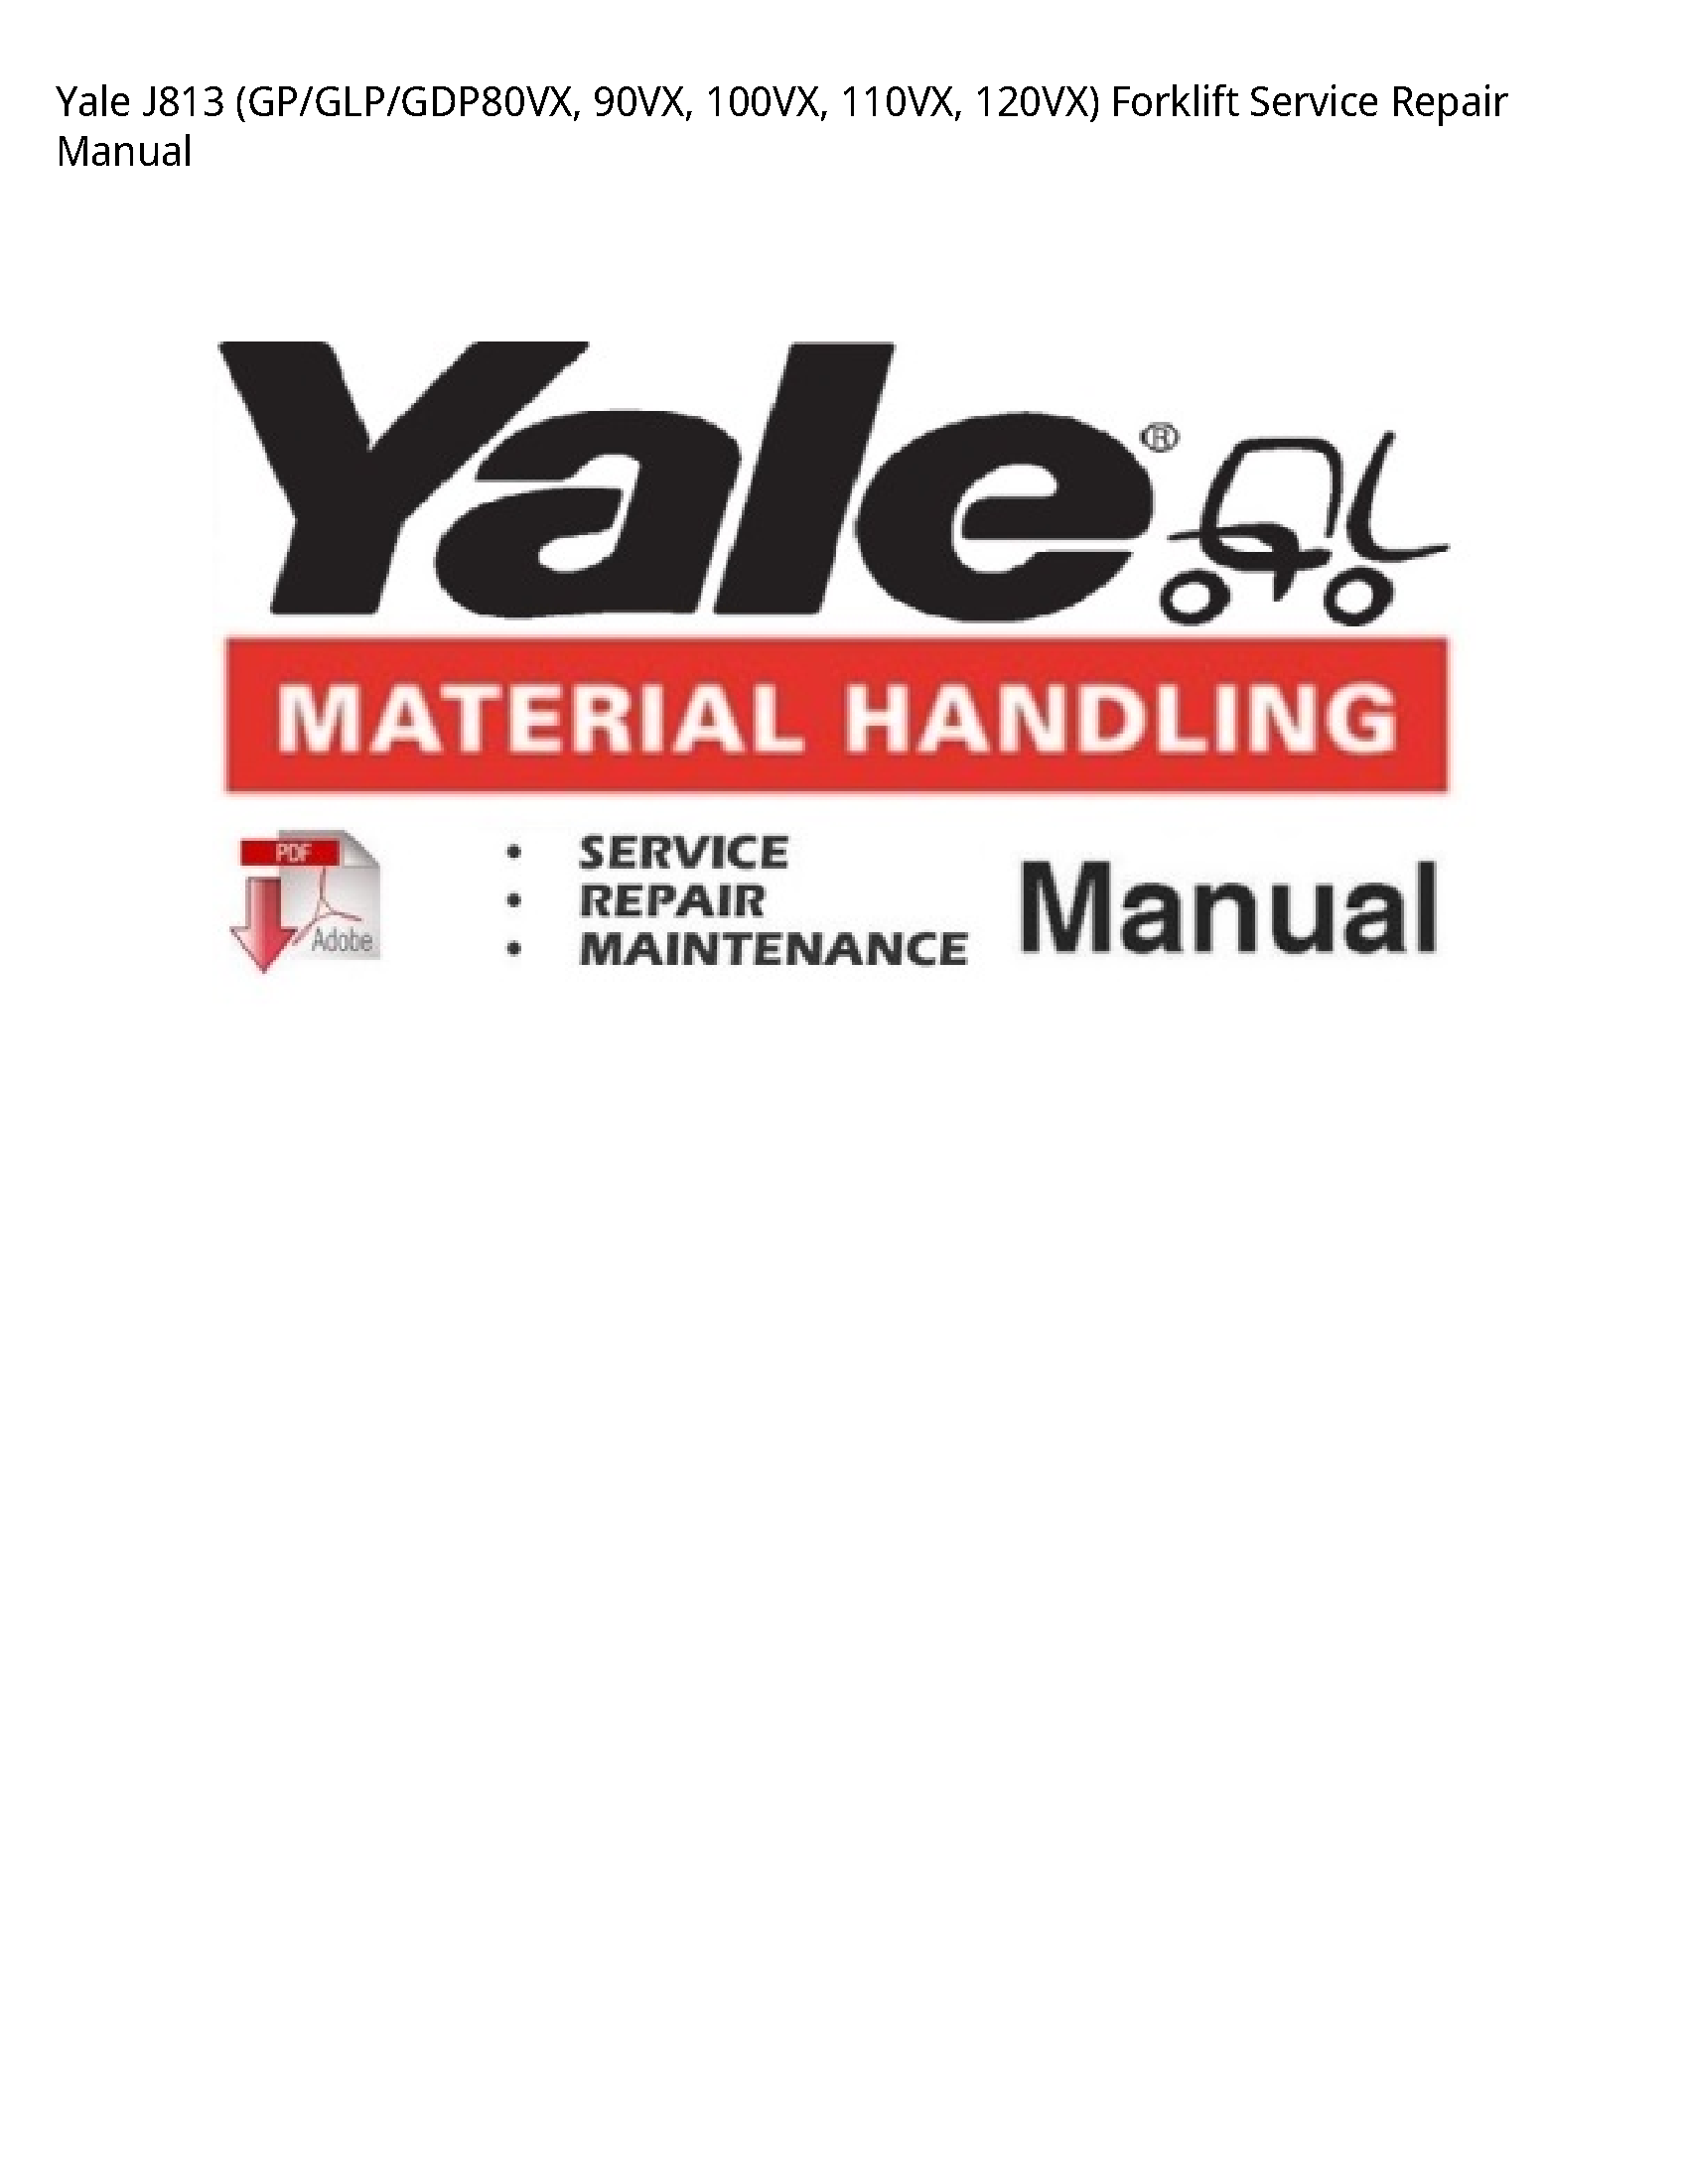 Yale J813 Forklift manual